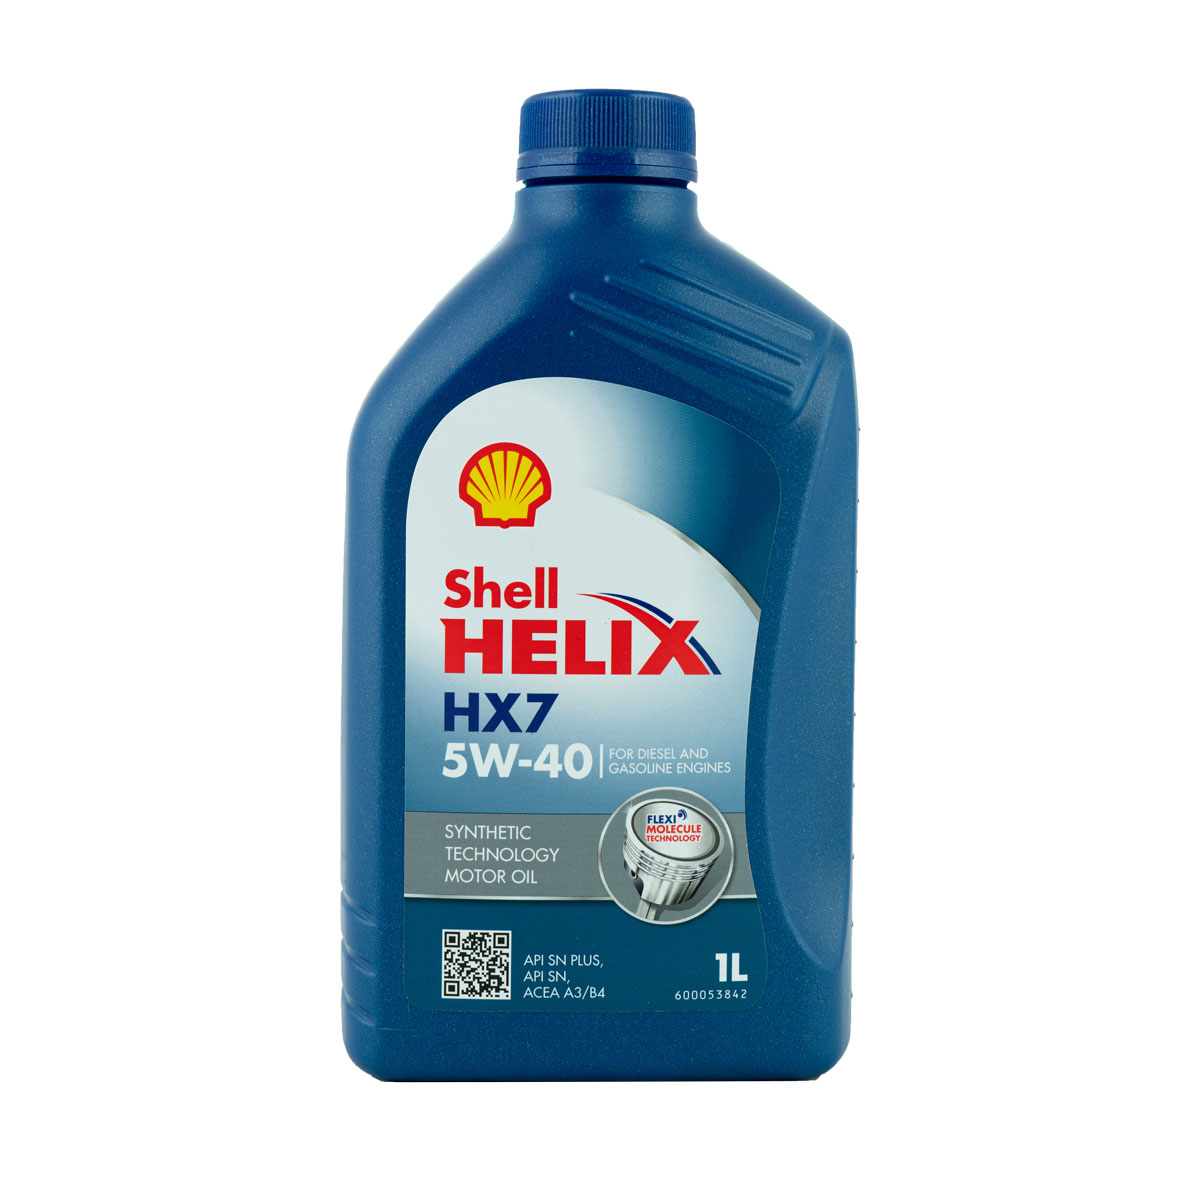 Shell Helix HX7 5W-40 Motoröl, 1l 1L